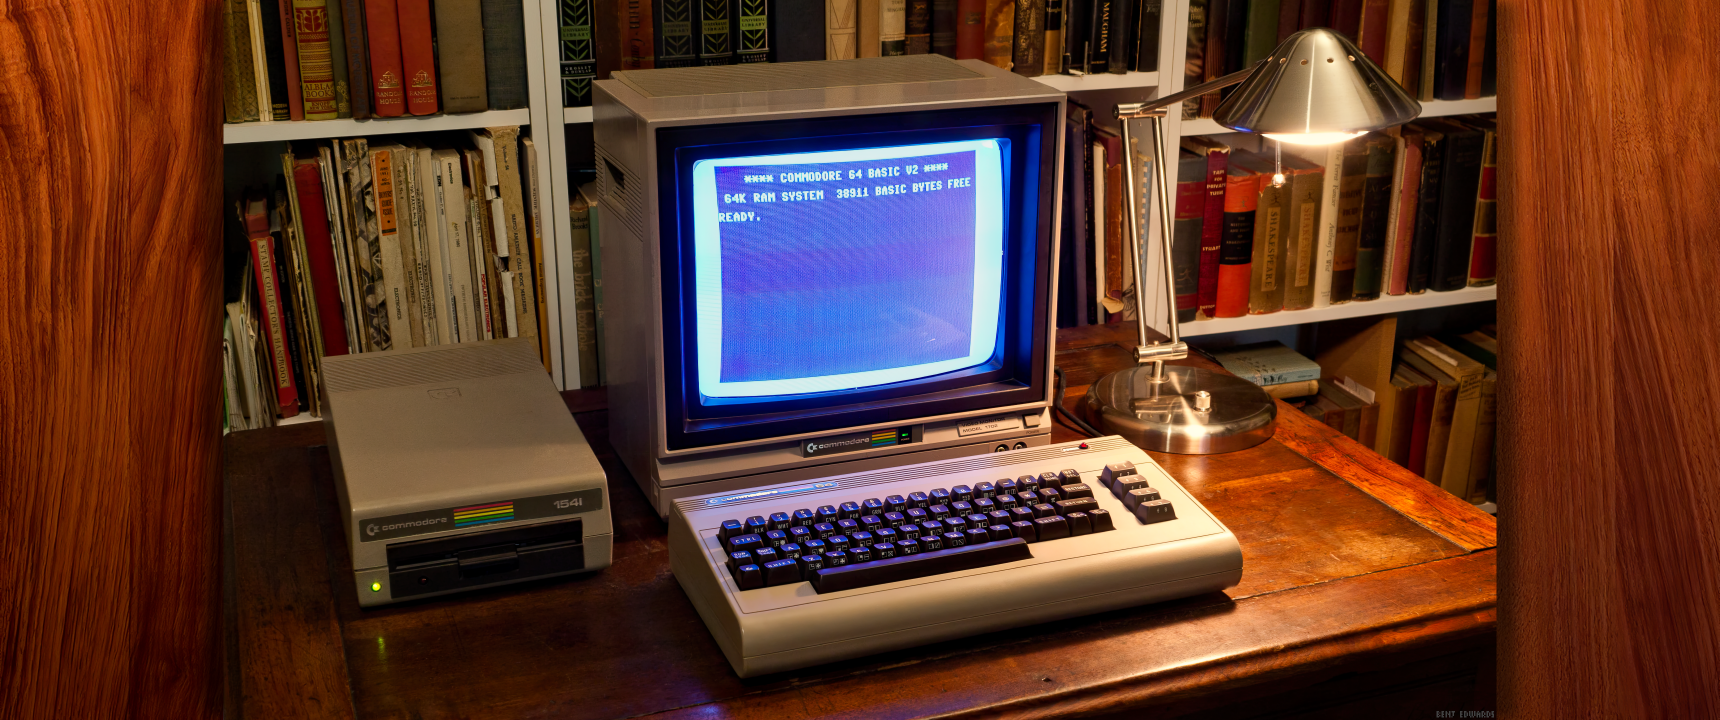 Desktop Wallpaper: The Commodore 64